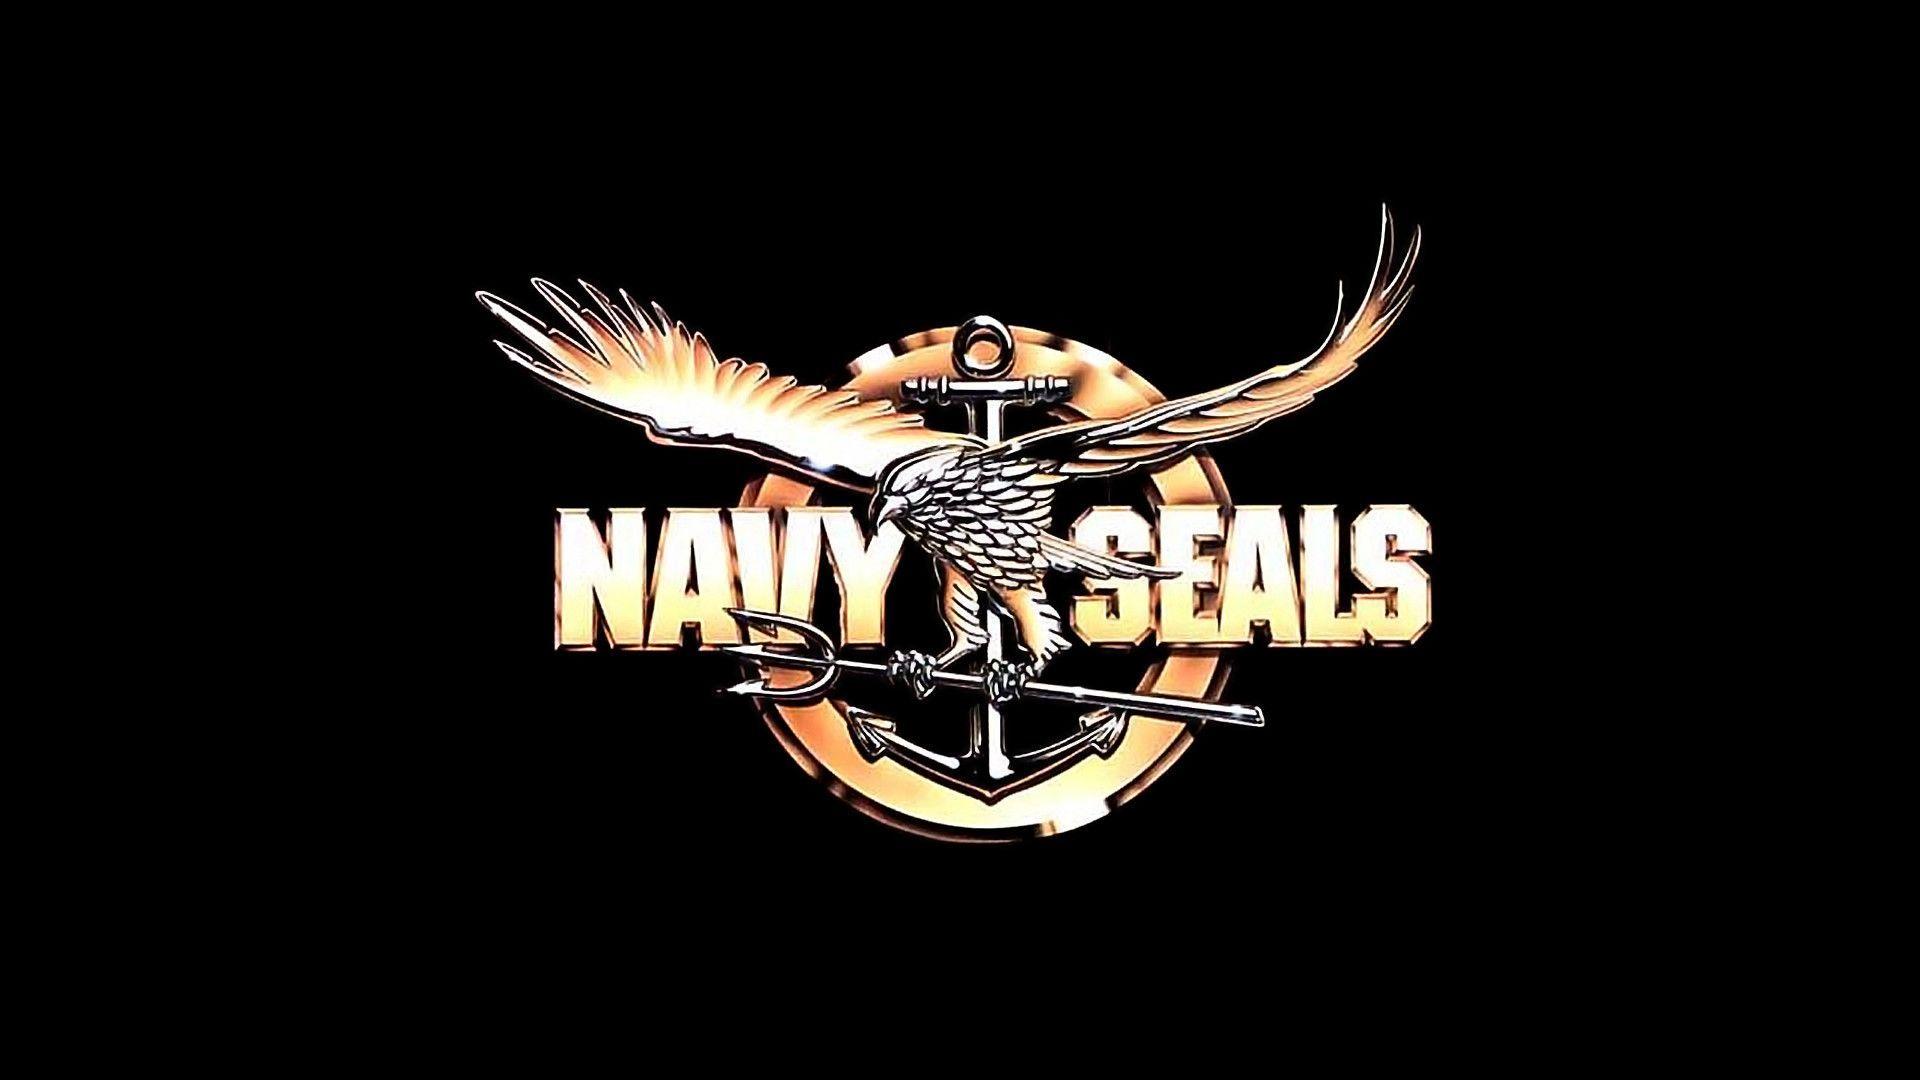 Seals Logo - Navy Seals Logo Wallpapers - Wallpaper Cave